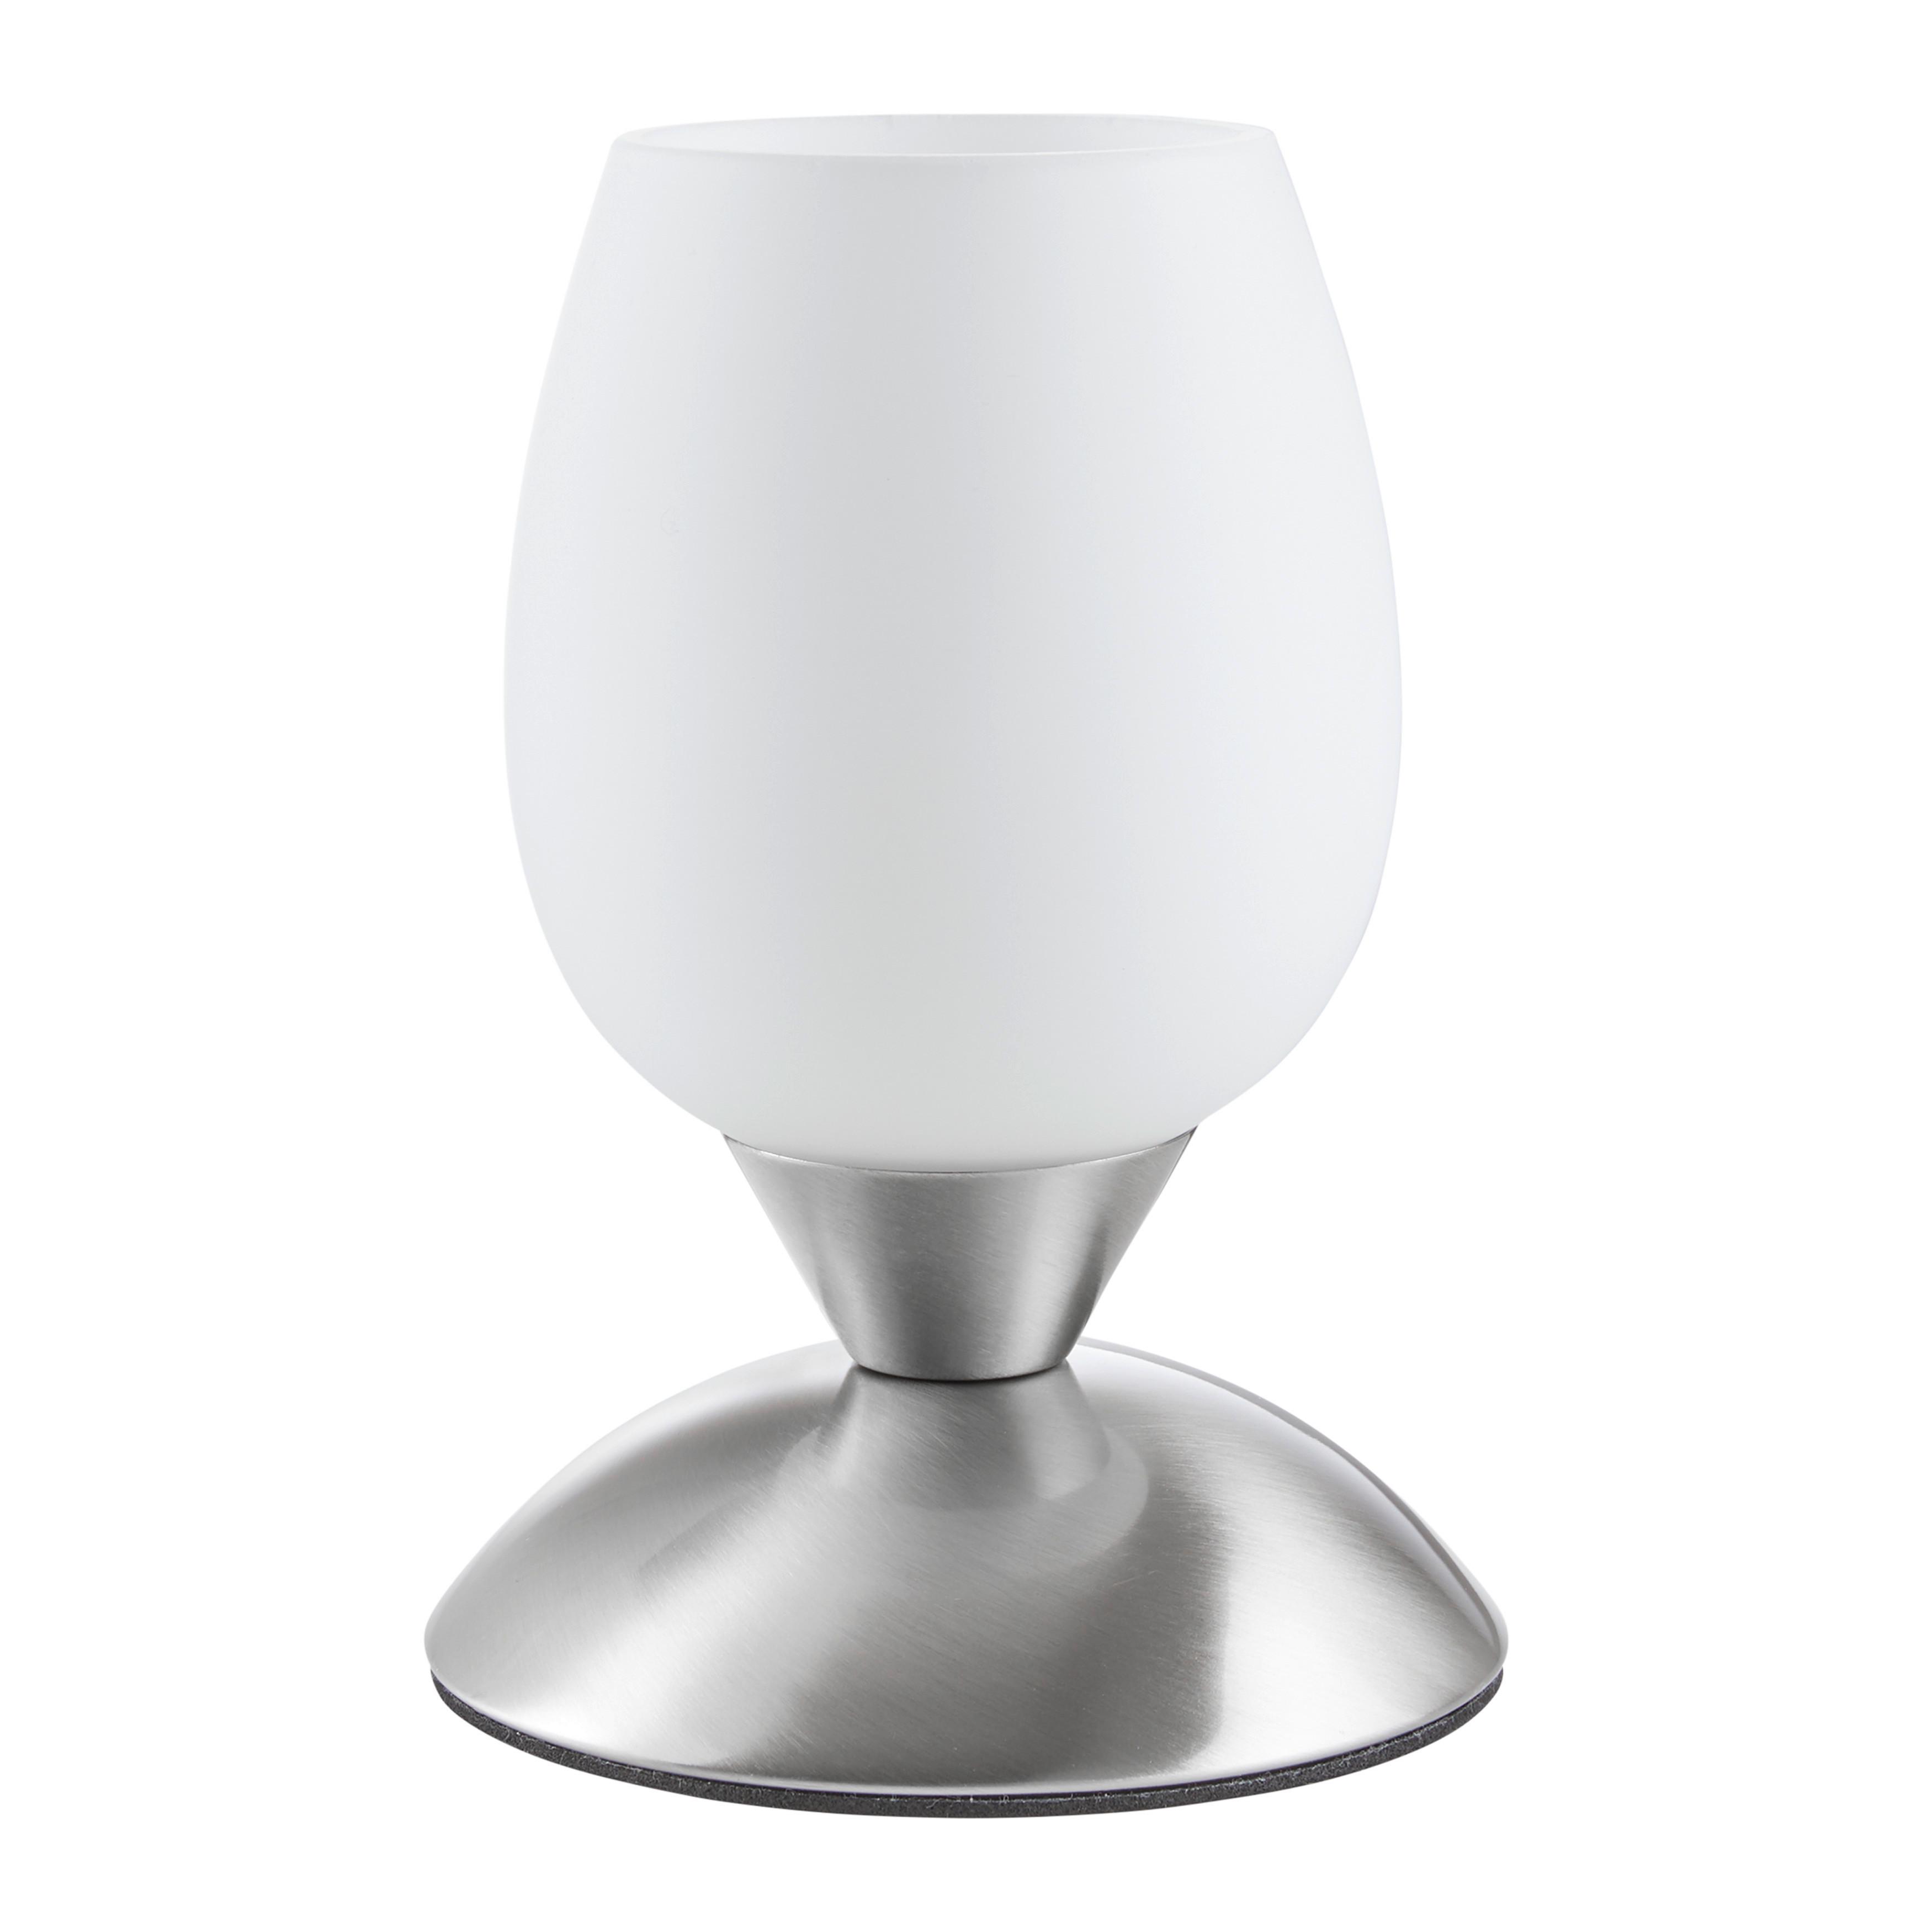 Tischleuchte Cup max. 40 Watt - Silberfarben/Weiß, MODERN, Glas/Metall (12,5/18cm) - Modern Living